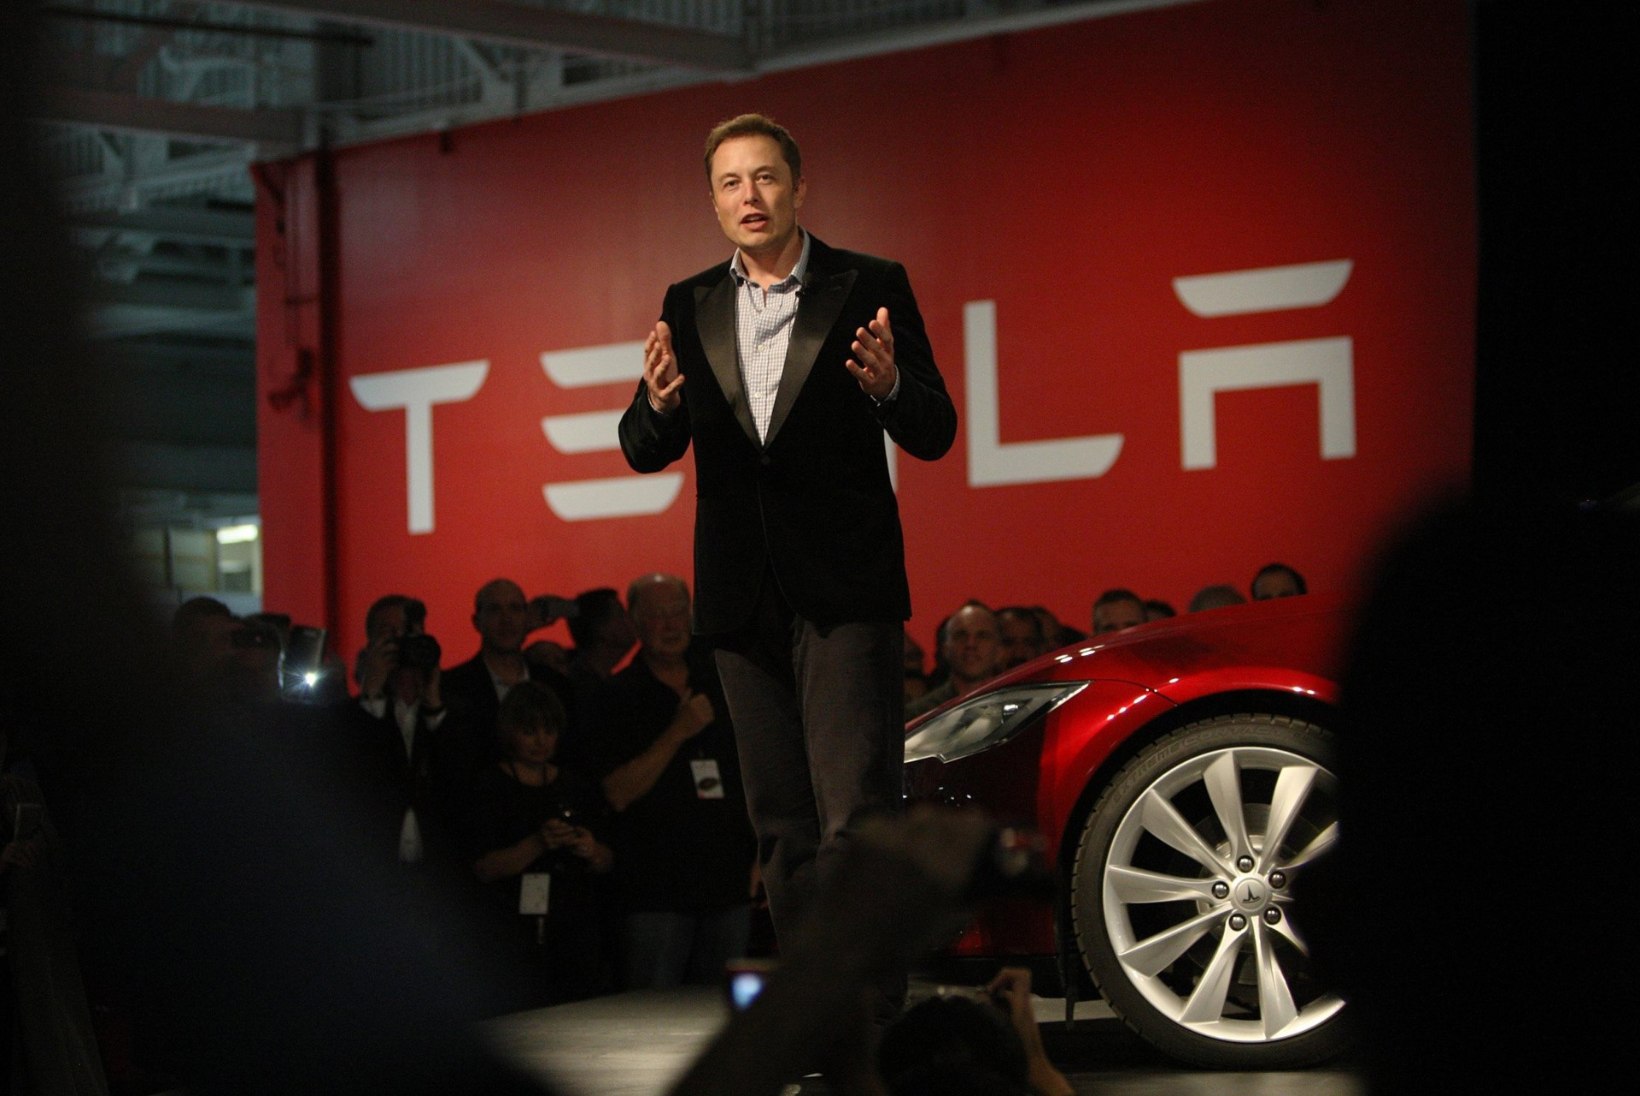 Millised on Eesti šansid Tesla gigatehas endale saada?